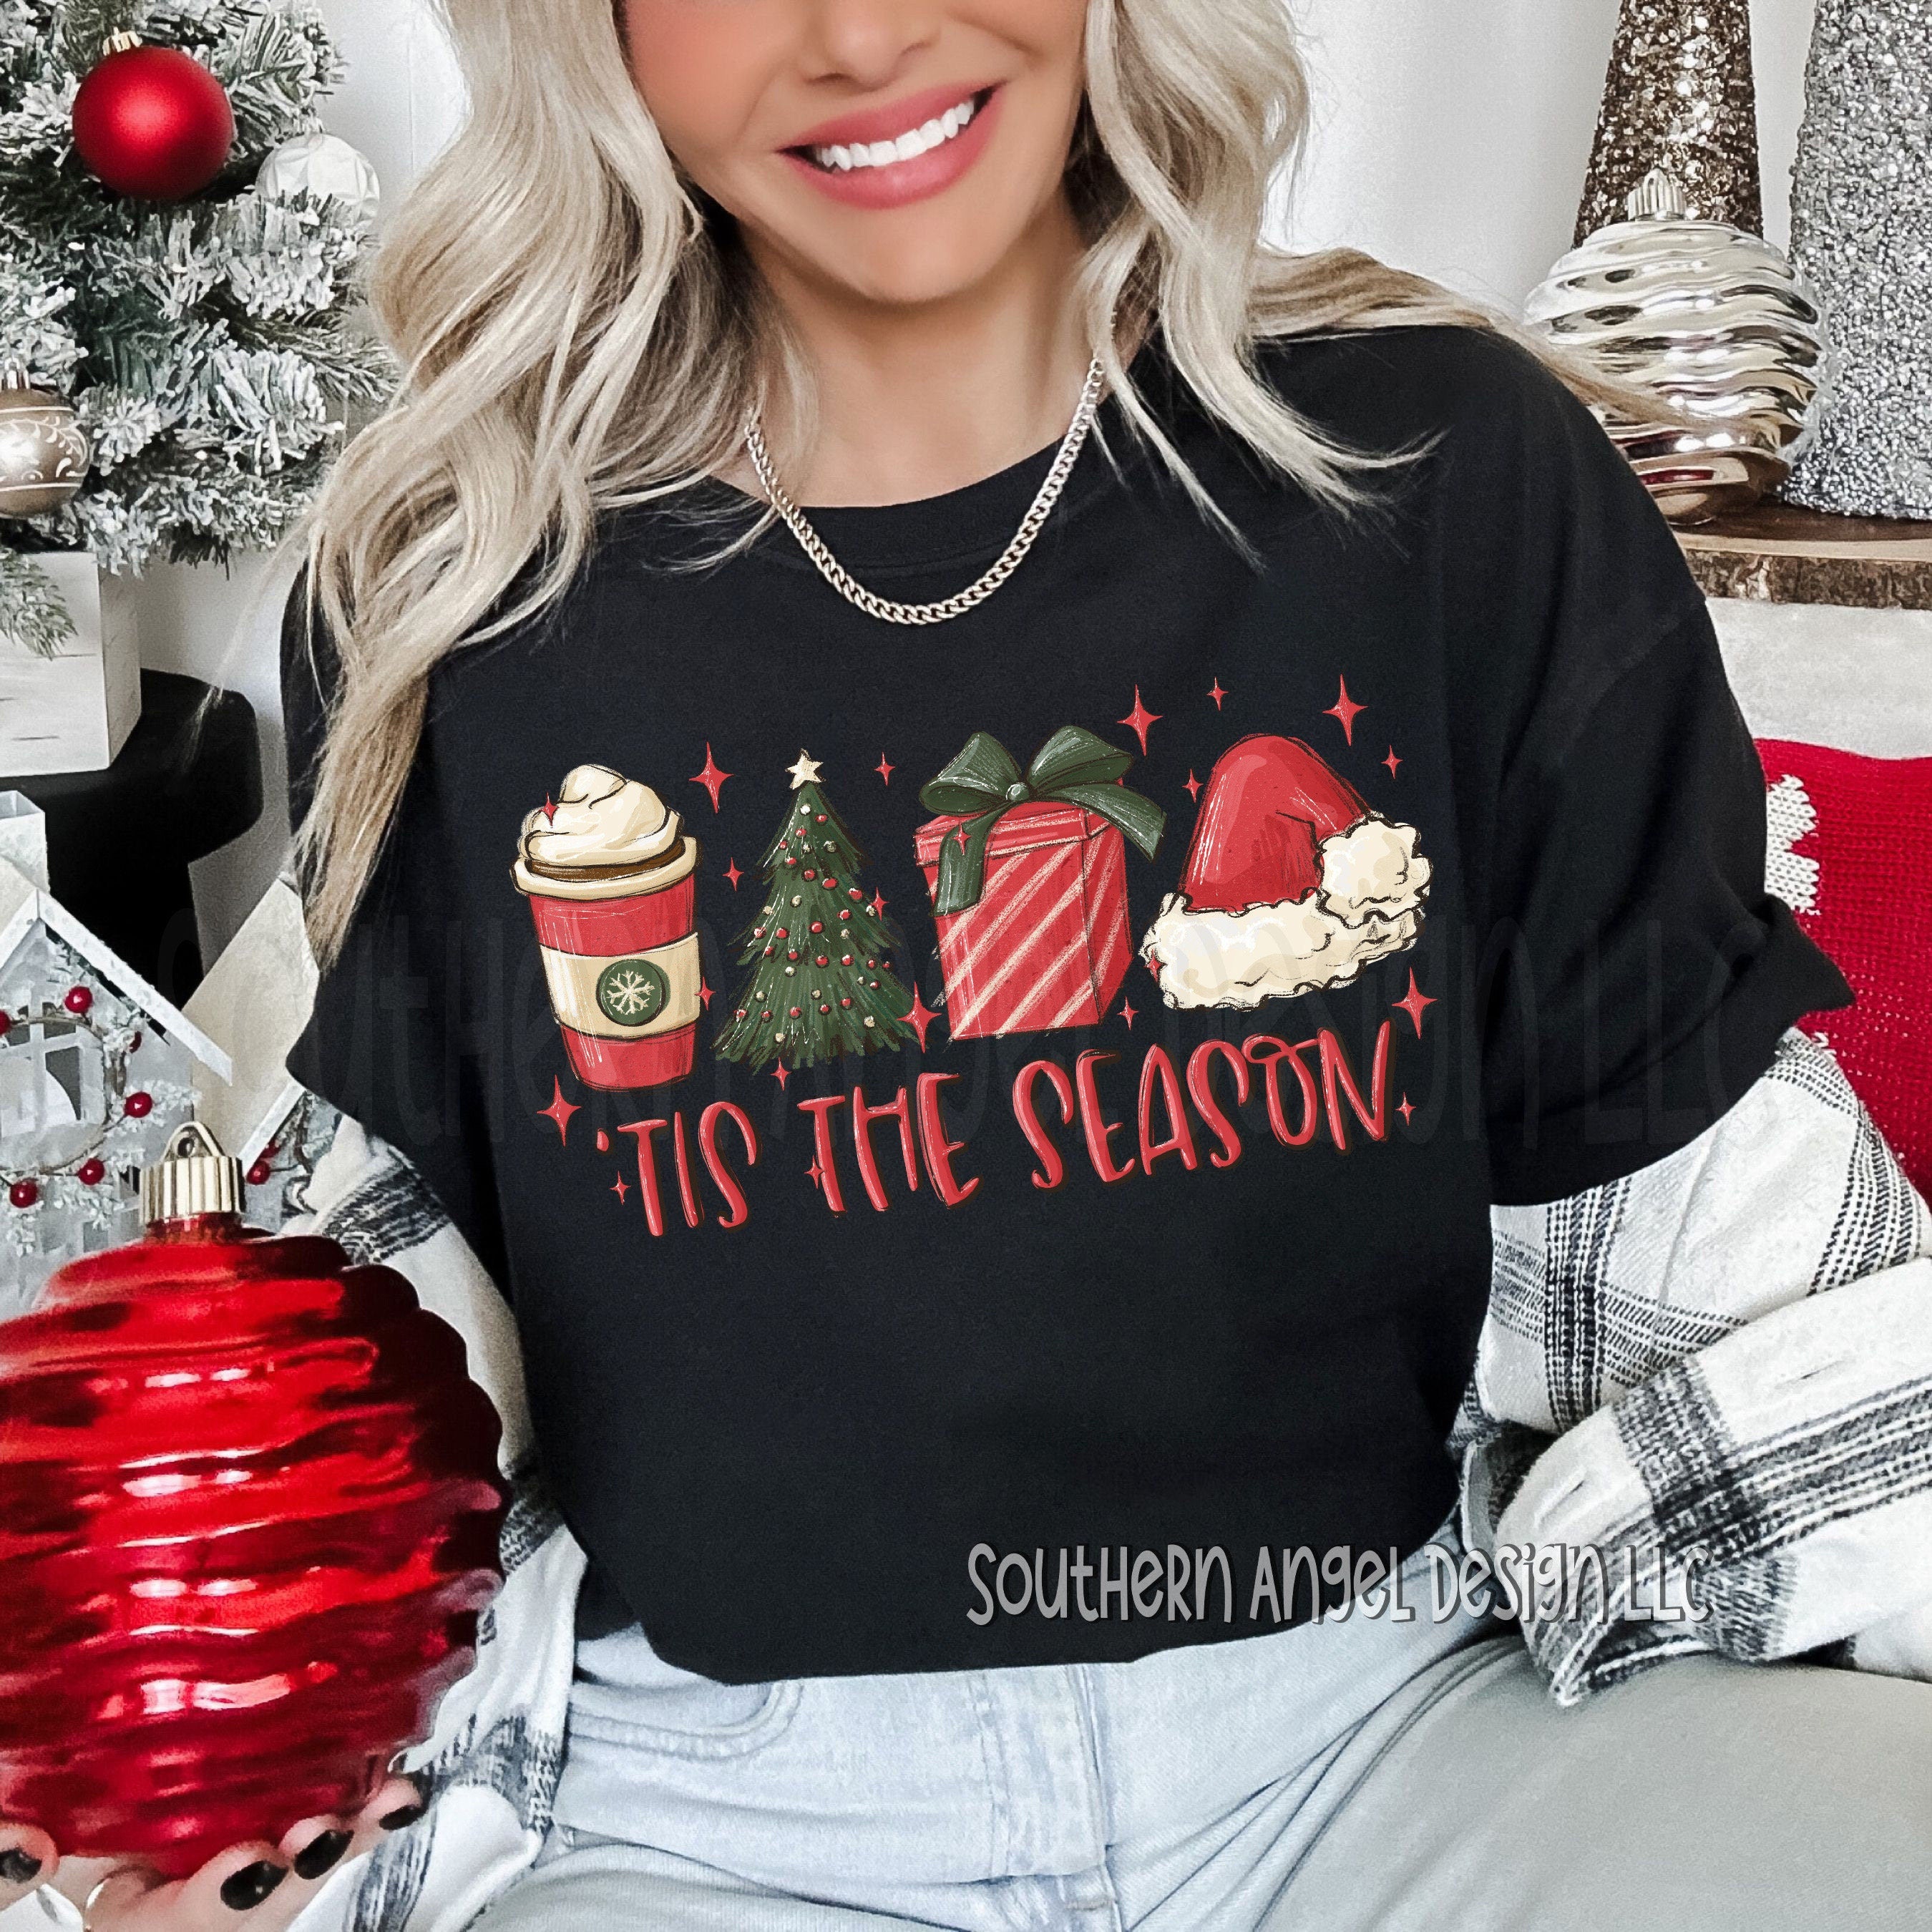 Merry Christmas tee, Christmas Shirts for Women, Christmas Tee, Christmas TShirt, Shirts For Christmas, Cute Christmas Shirts, Holiday Tee